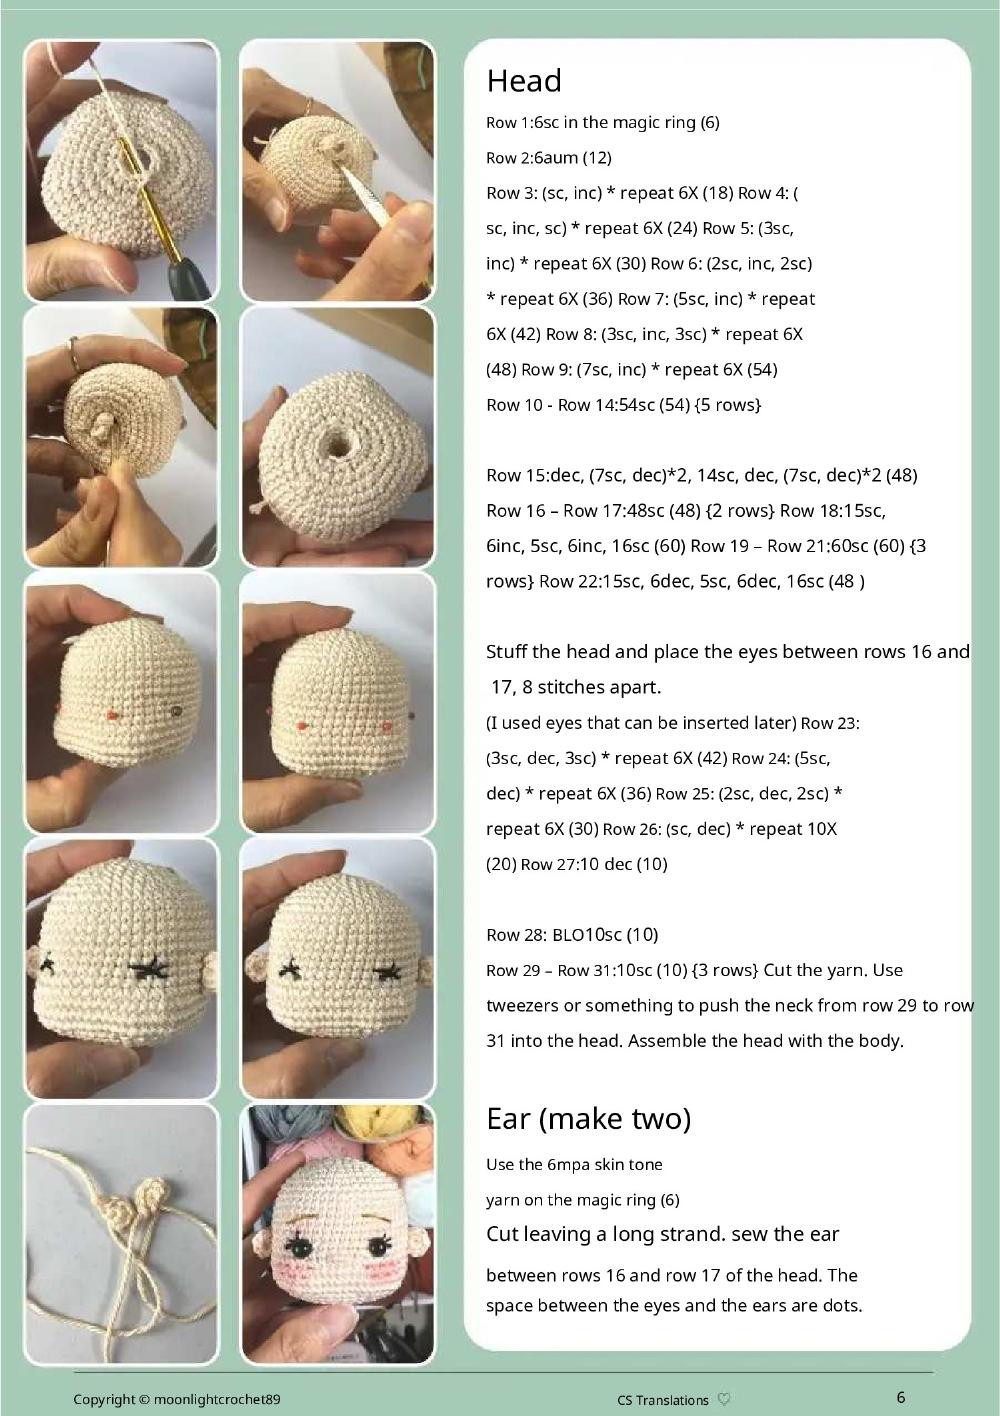 jade doll crochet pattern